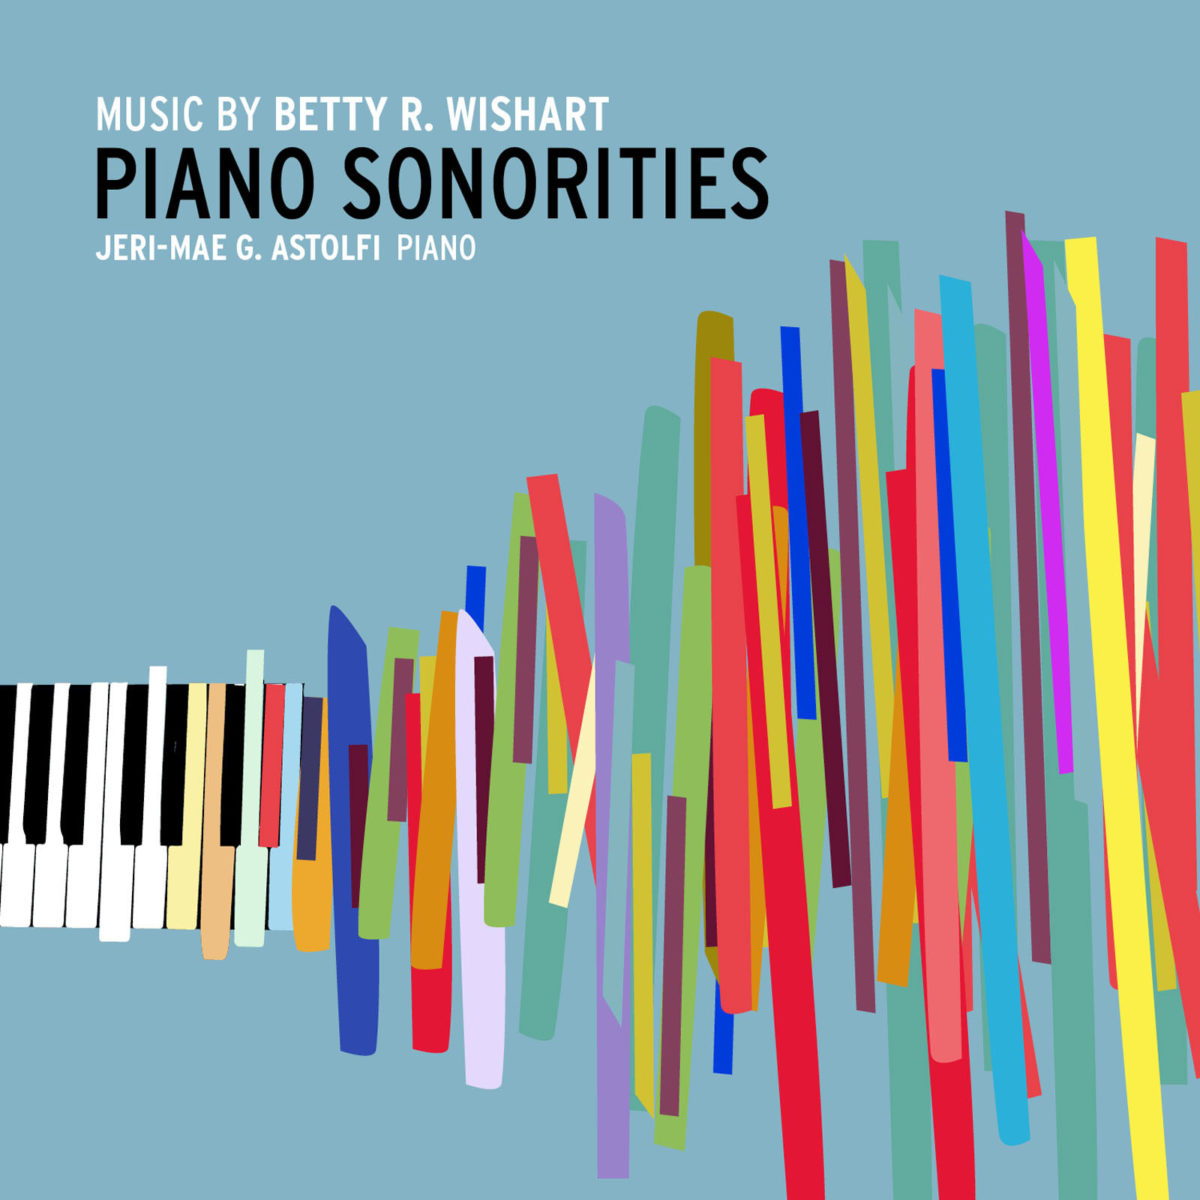 Kathodik Review: PIANO SONORITIES